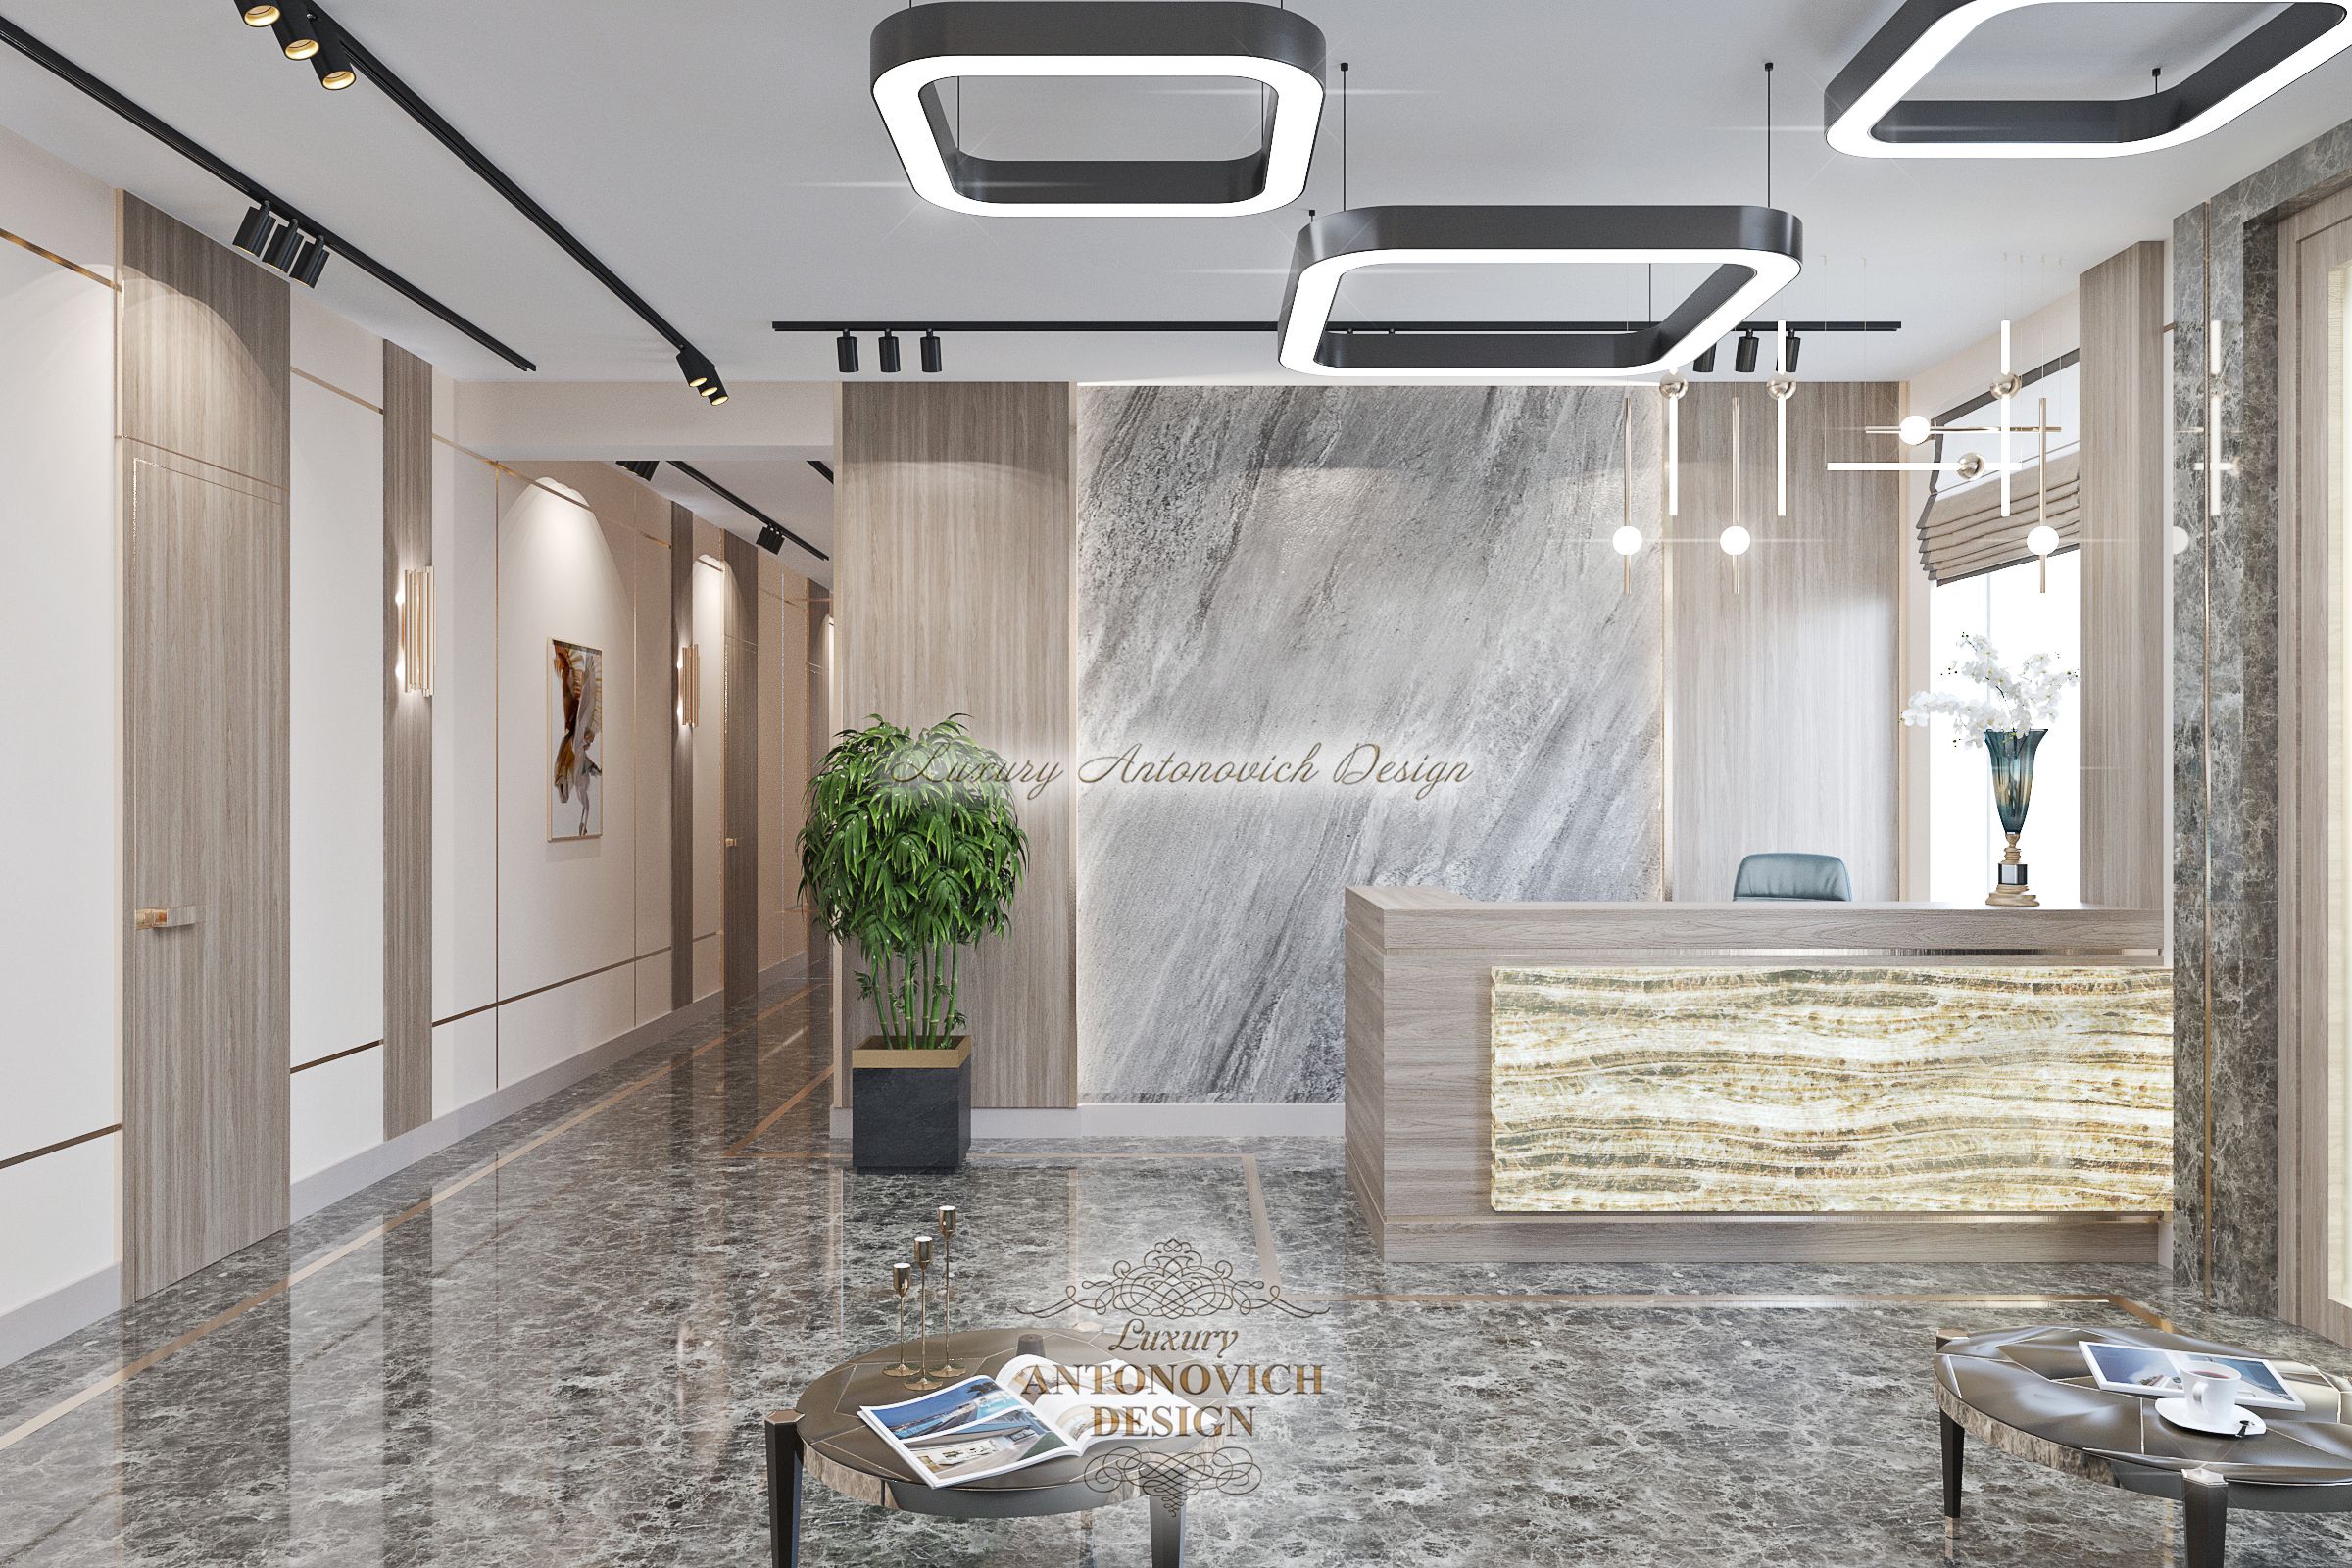 Фешенебельный дизайн интерьера Холла офиса, Luxury Antonovich Design